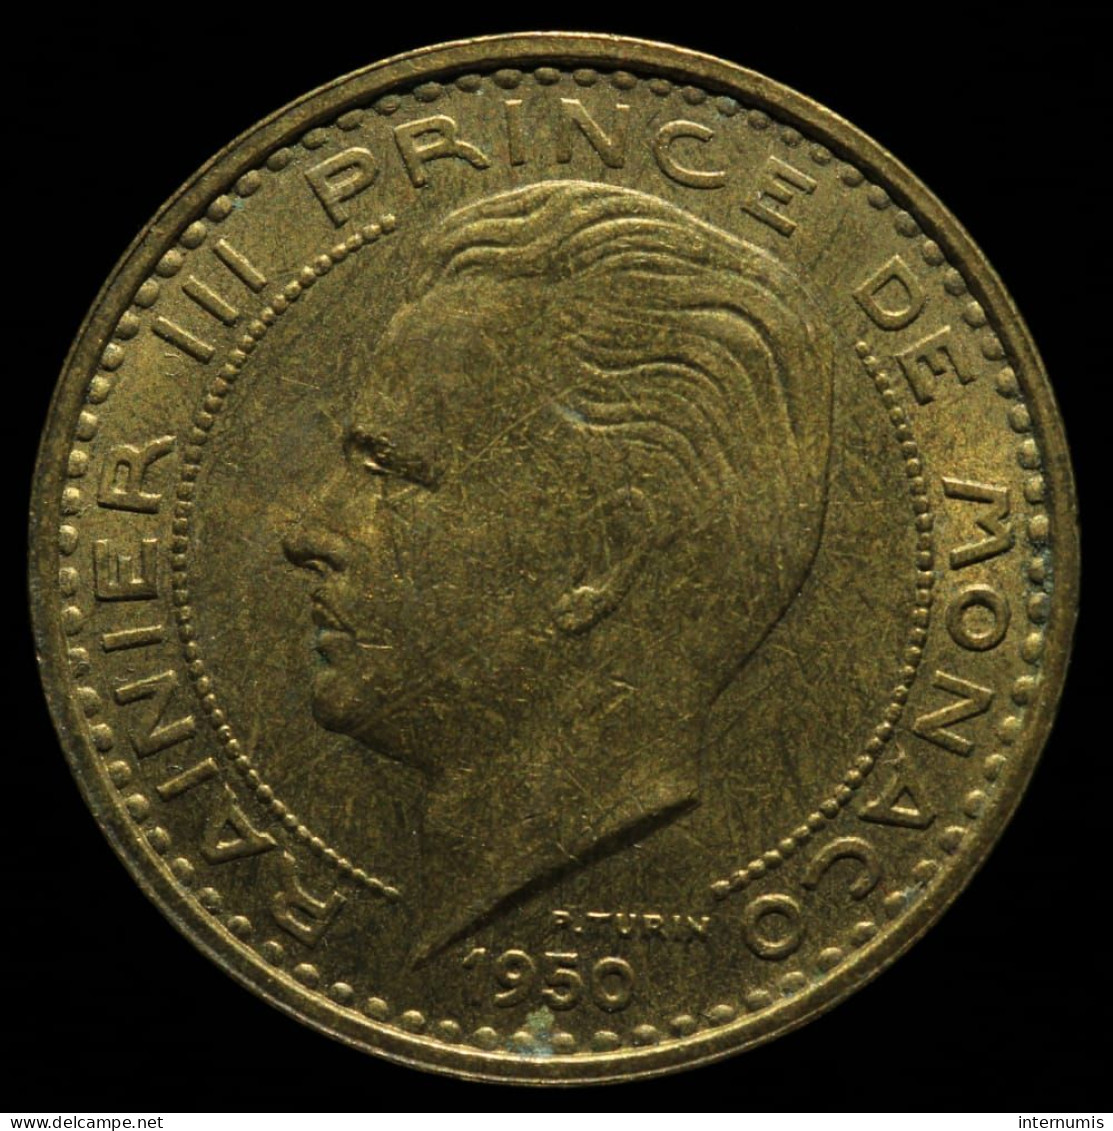 Monaco, Rainier III, 50 Francs, 1950, Cu-Al, NC (UNC), KM#132, G.MC141 - 1949-1956 Alte Francs